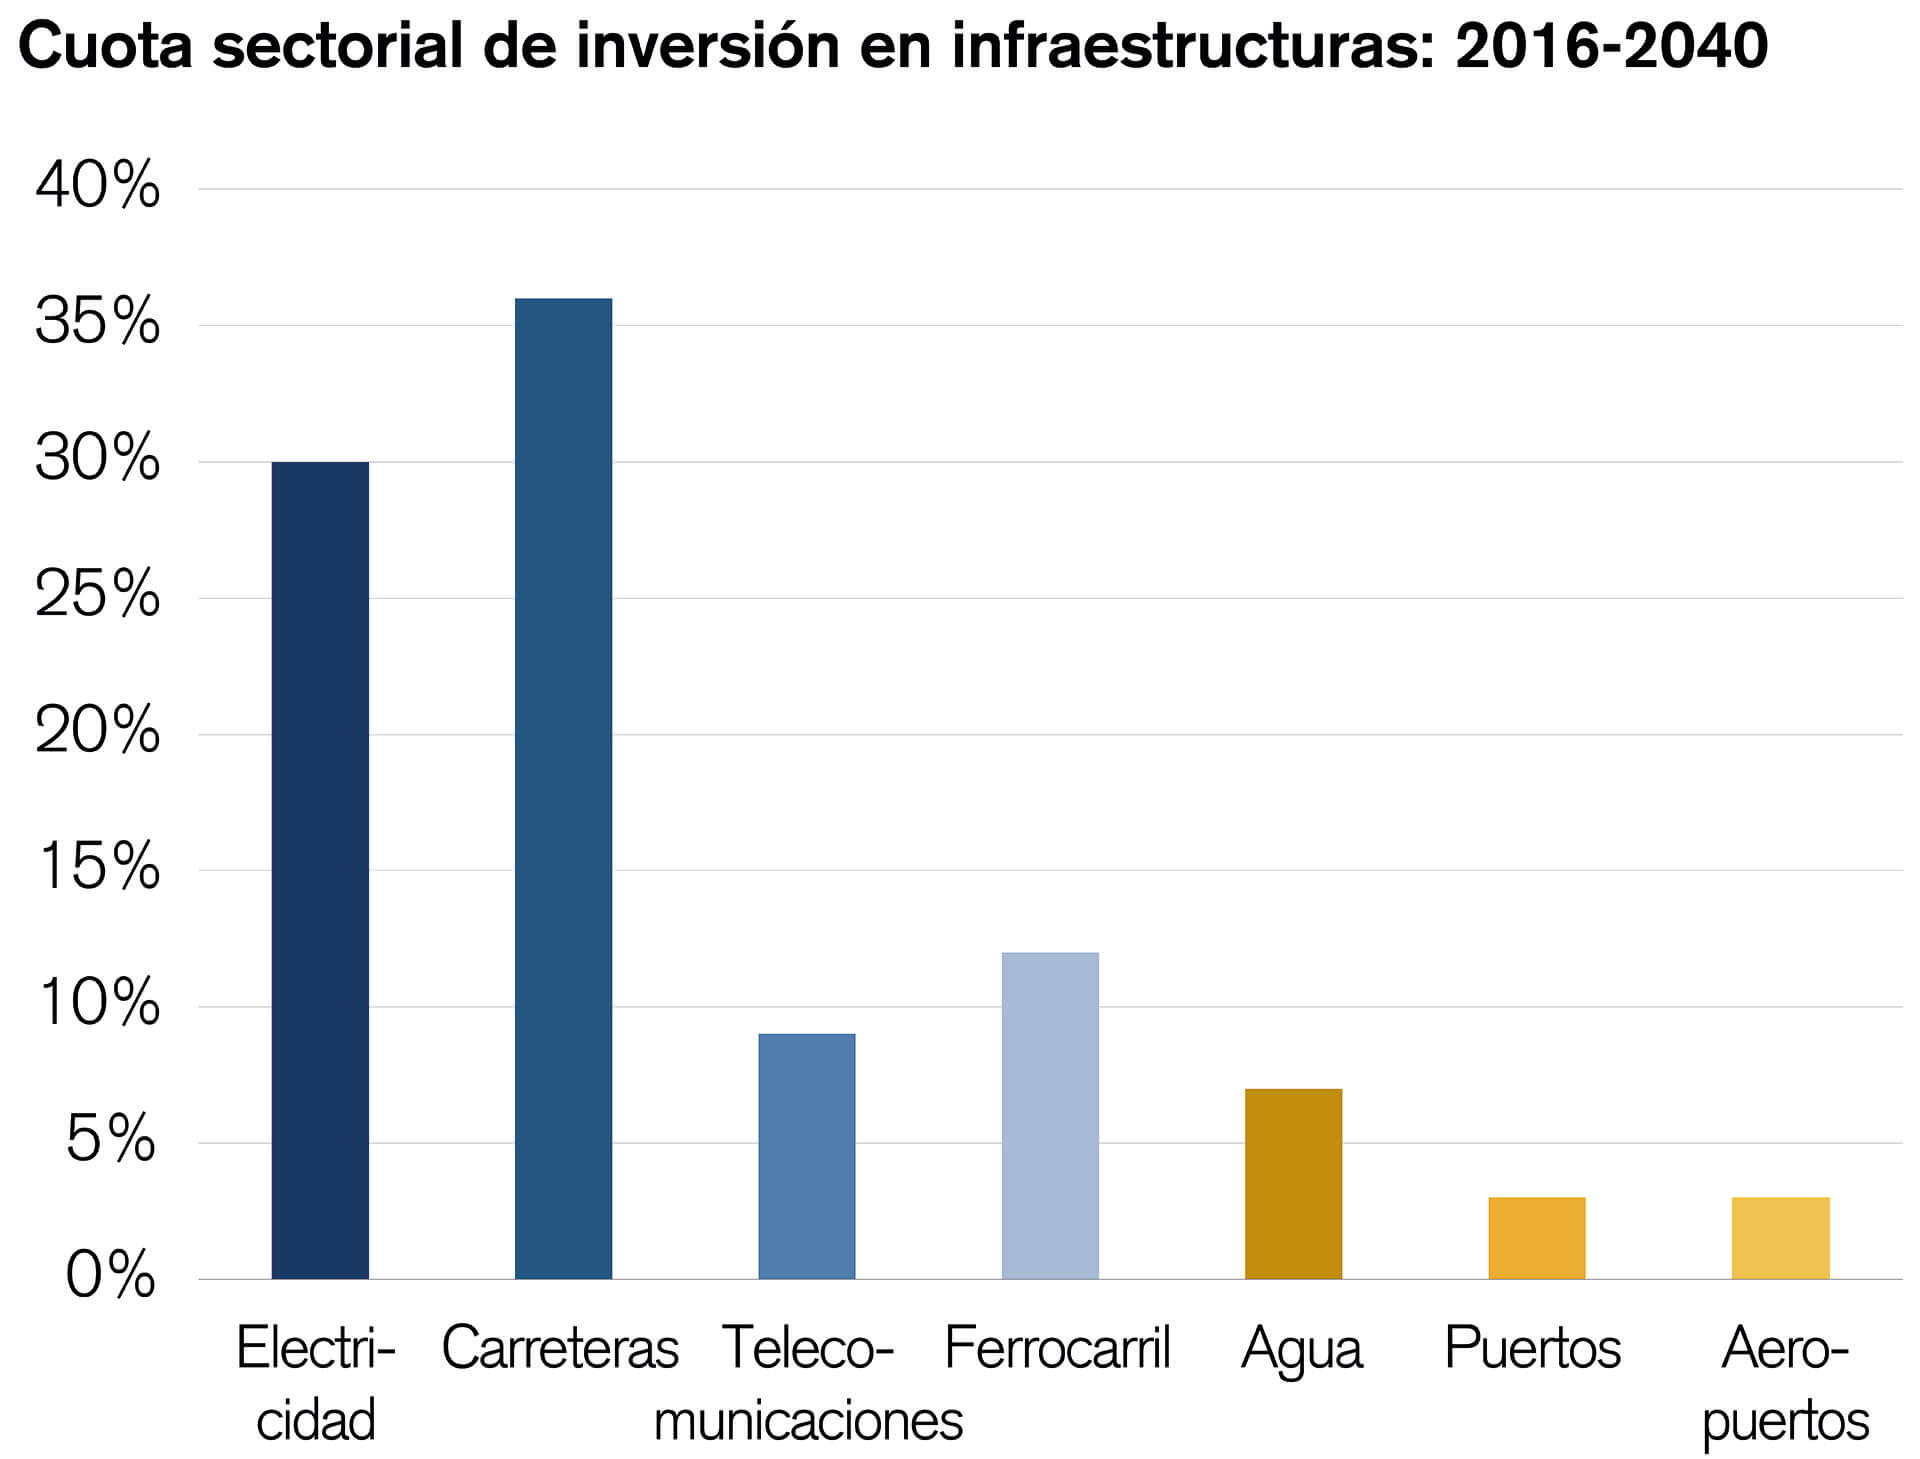 El gráfico de la barra vertical muestra la cuota de inversión en infraestructuras por sectores en los años 2016-2040.